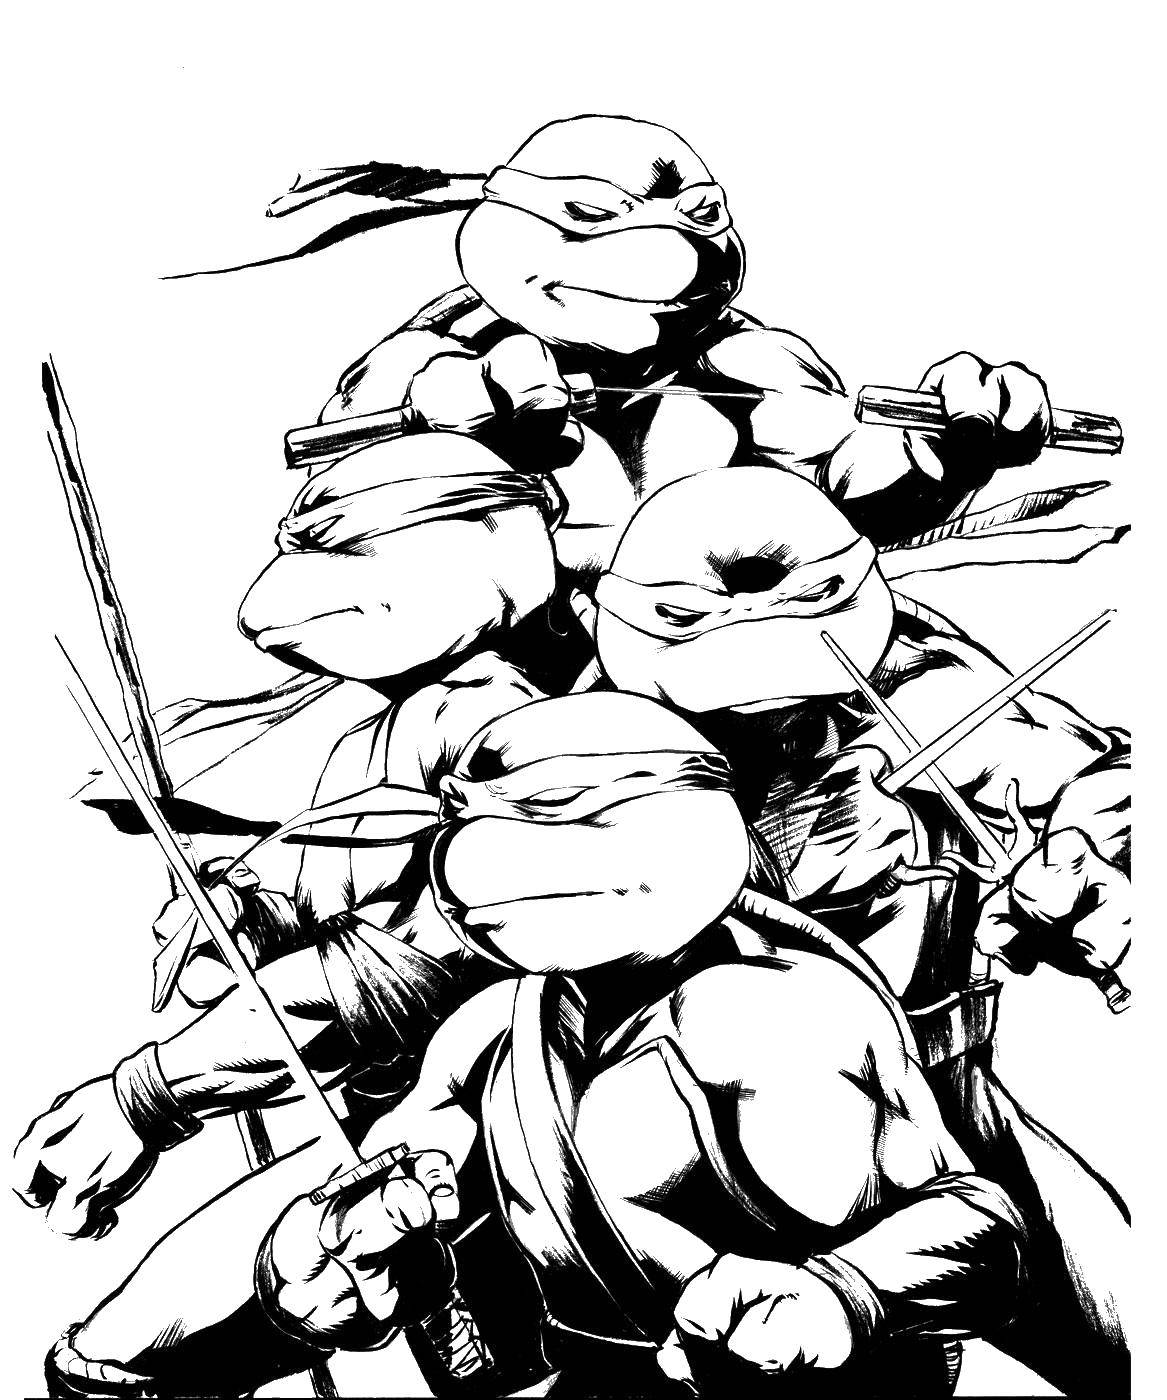 Coloring Teenage mutant ninja turtles fighting. Category ninja . Tags:  ninja cartoons.